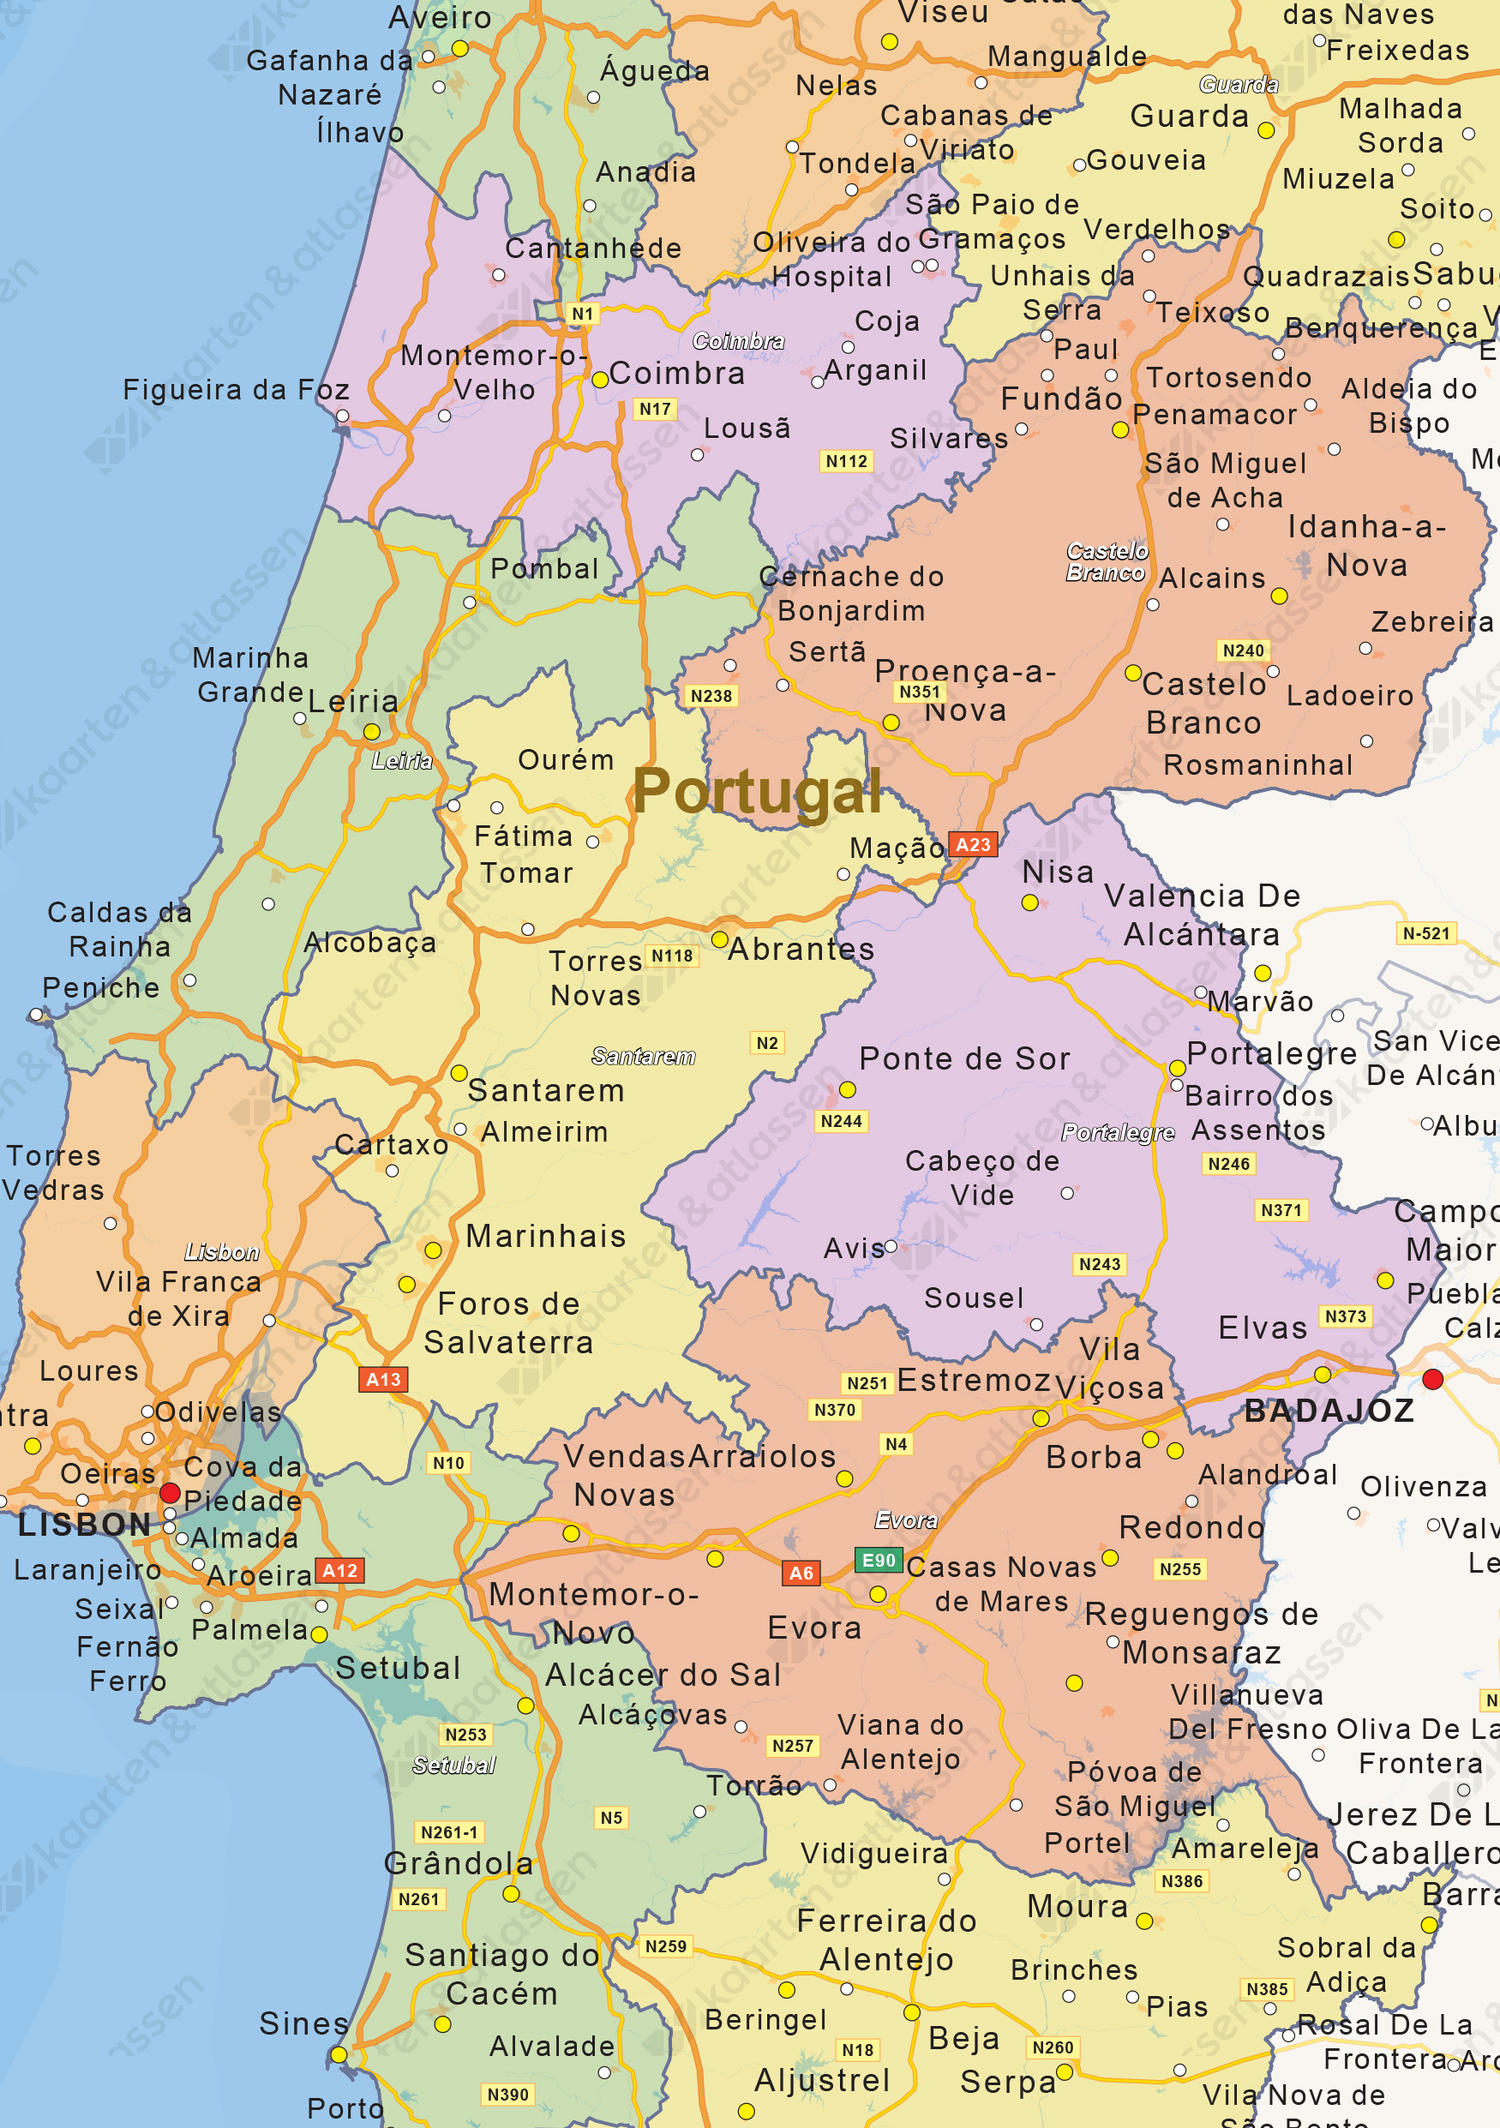 Staatkundige landkaart Portugal 